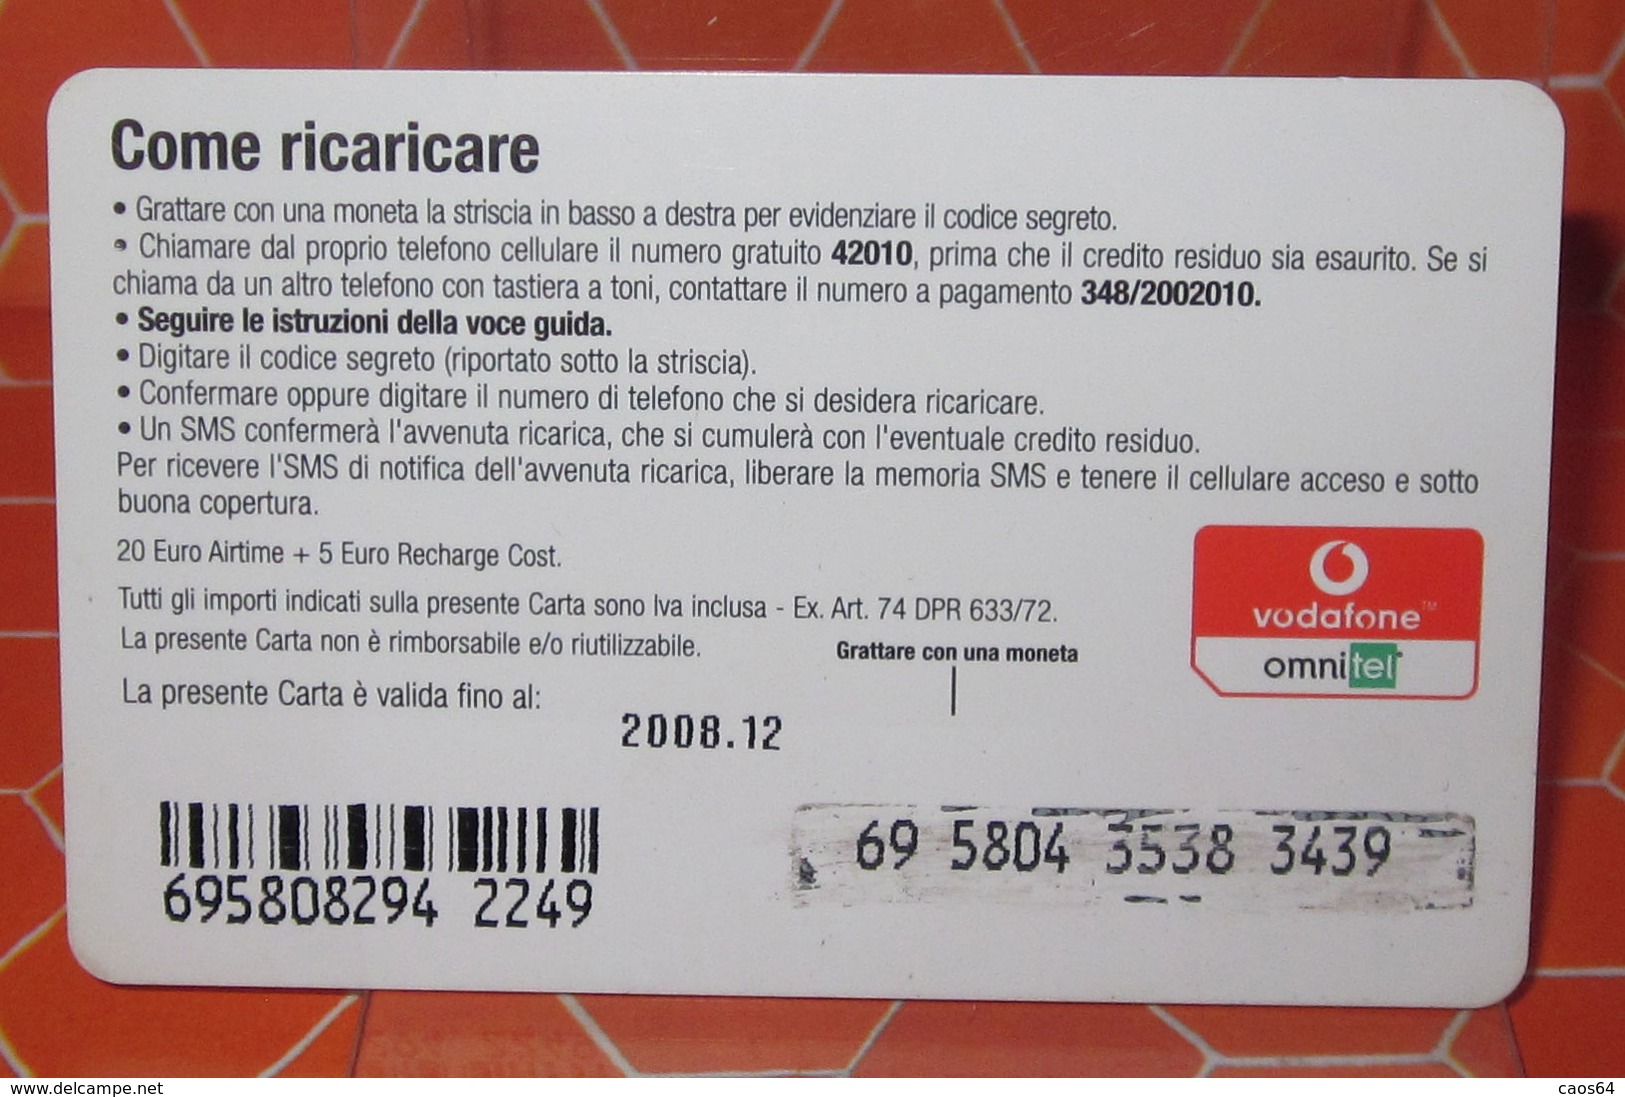 VODAFONE OMNITEL CARICO SOSPESO - Schede GSM, Prepagate & Ricariche